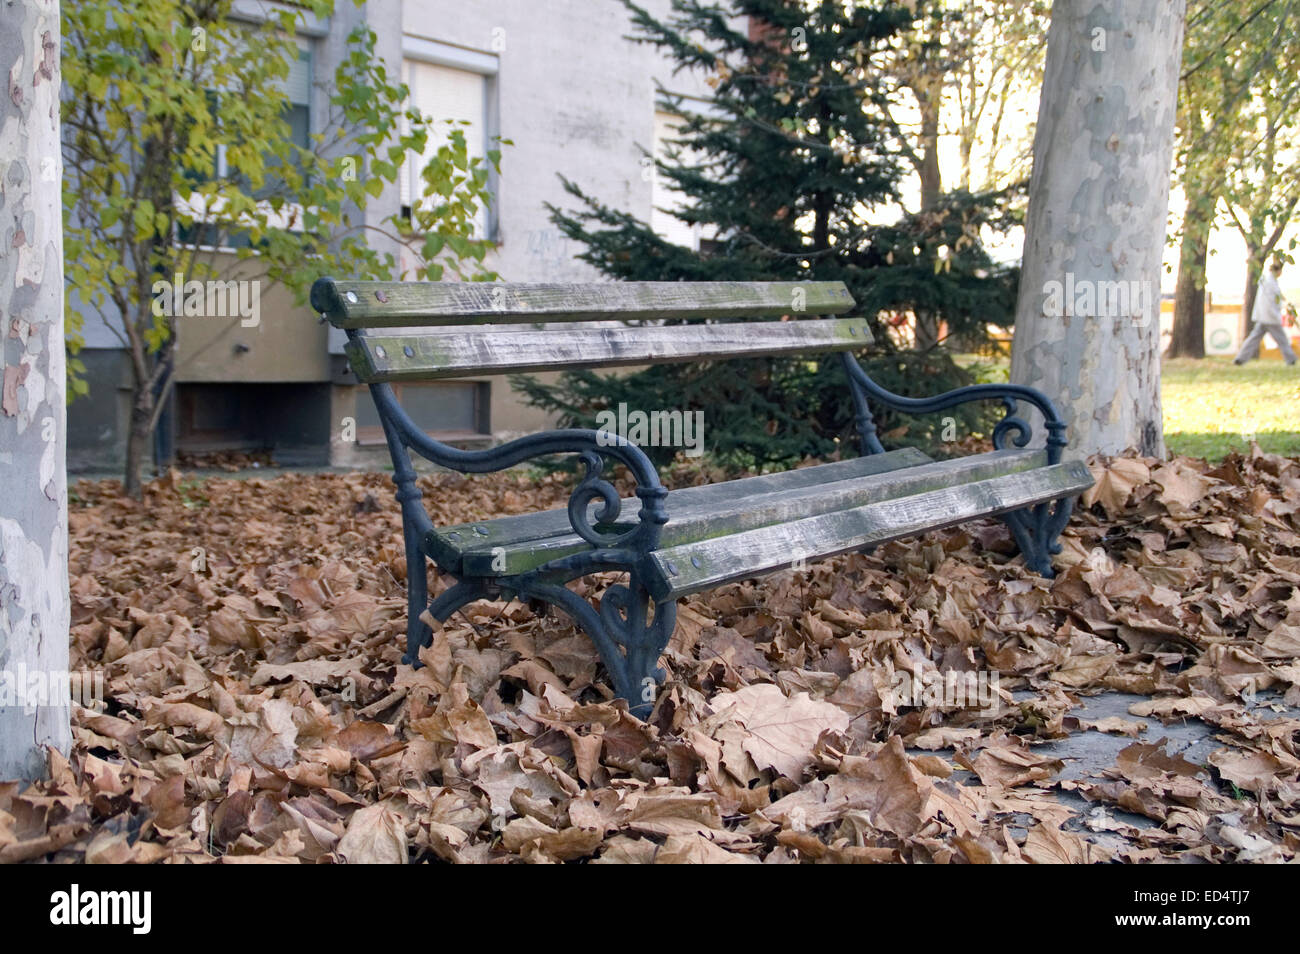 Holzbank mit Herbst Laub bedeckt. Bank vor dem Wohnhaus. Stockfoto